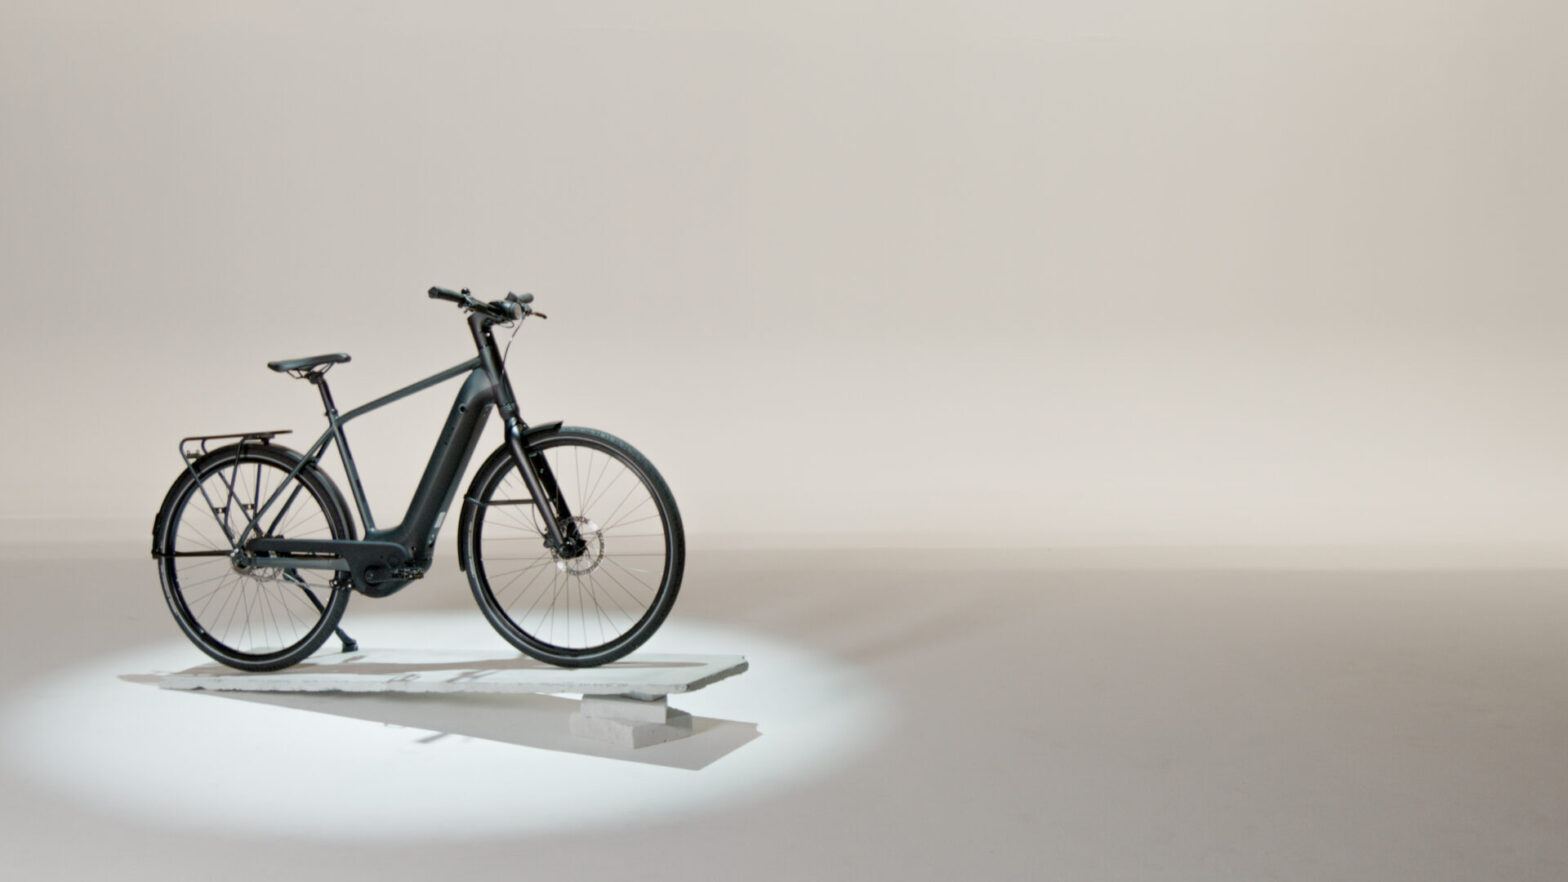 moteur à boite auto et écran tactile, la nouvelle référence des vélos électriques français ?